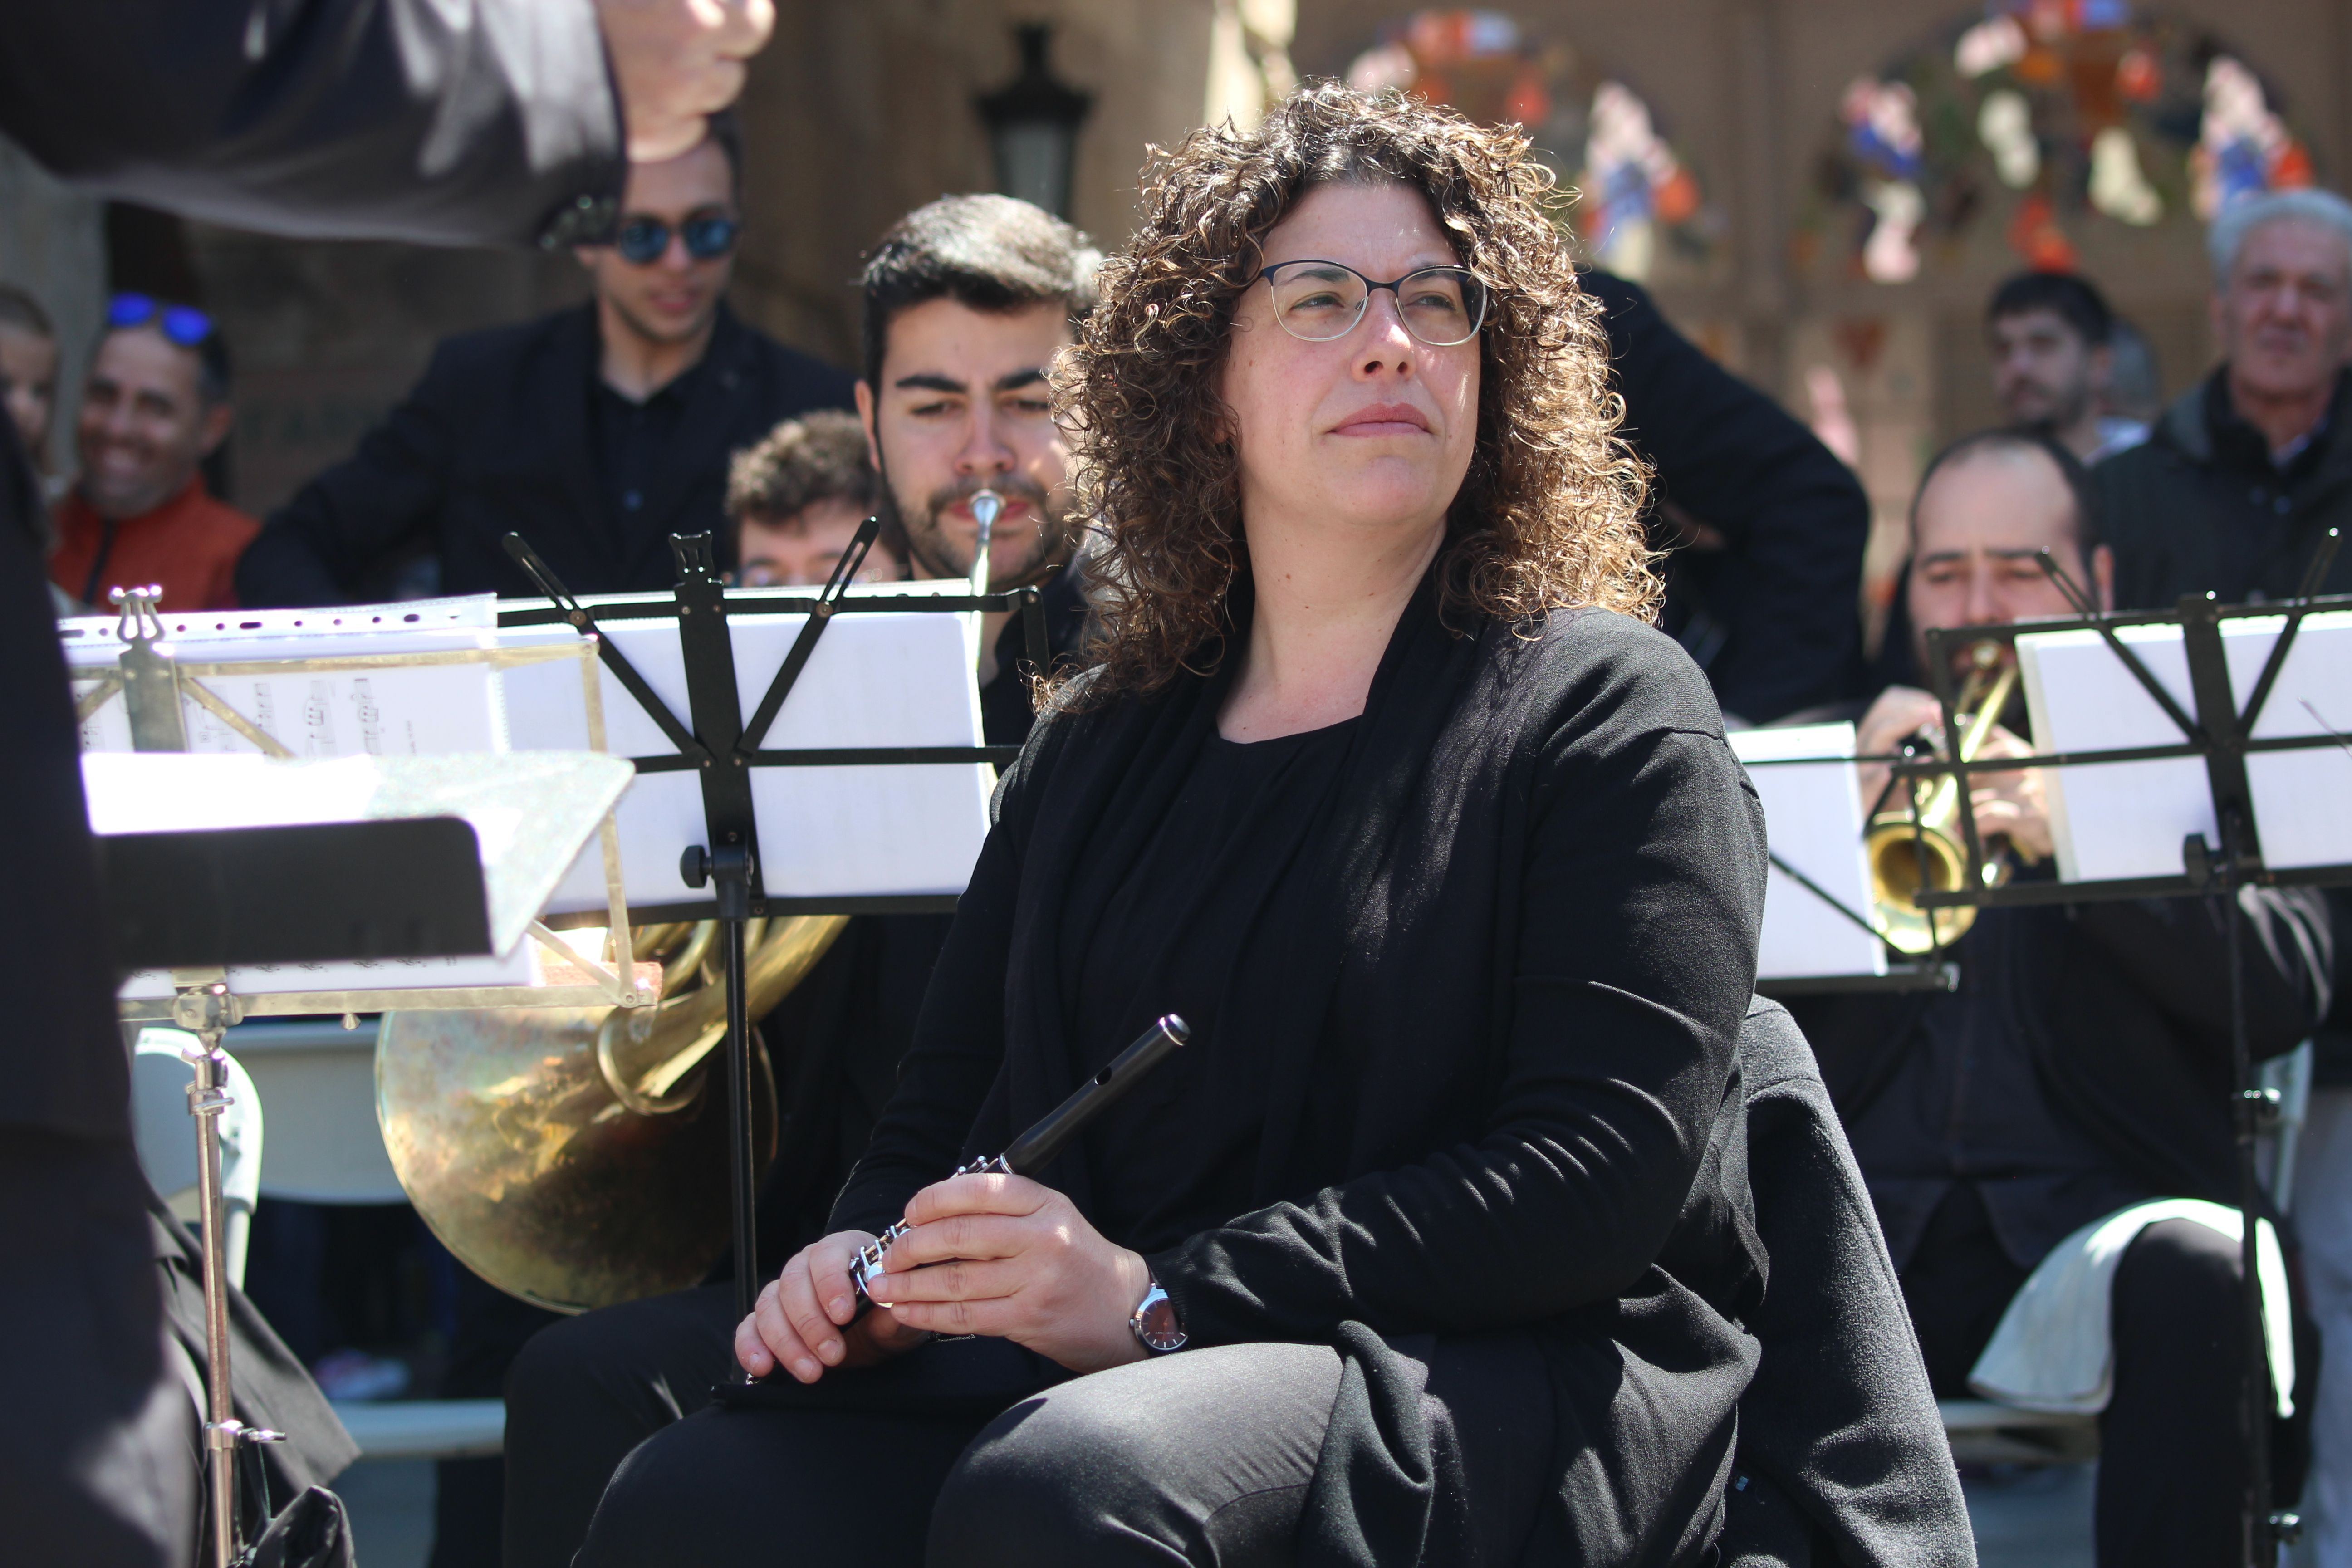  La Banda Municipal de Música, dirigida por Mario Vercher Grau, ofrece en la Plaza Mayor un concierto.